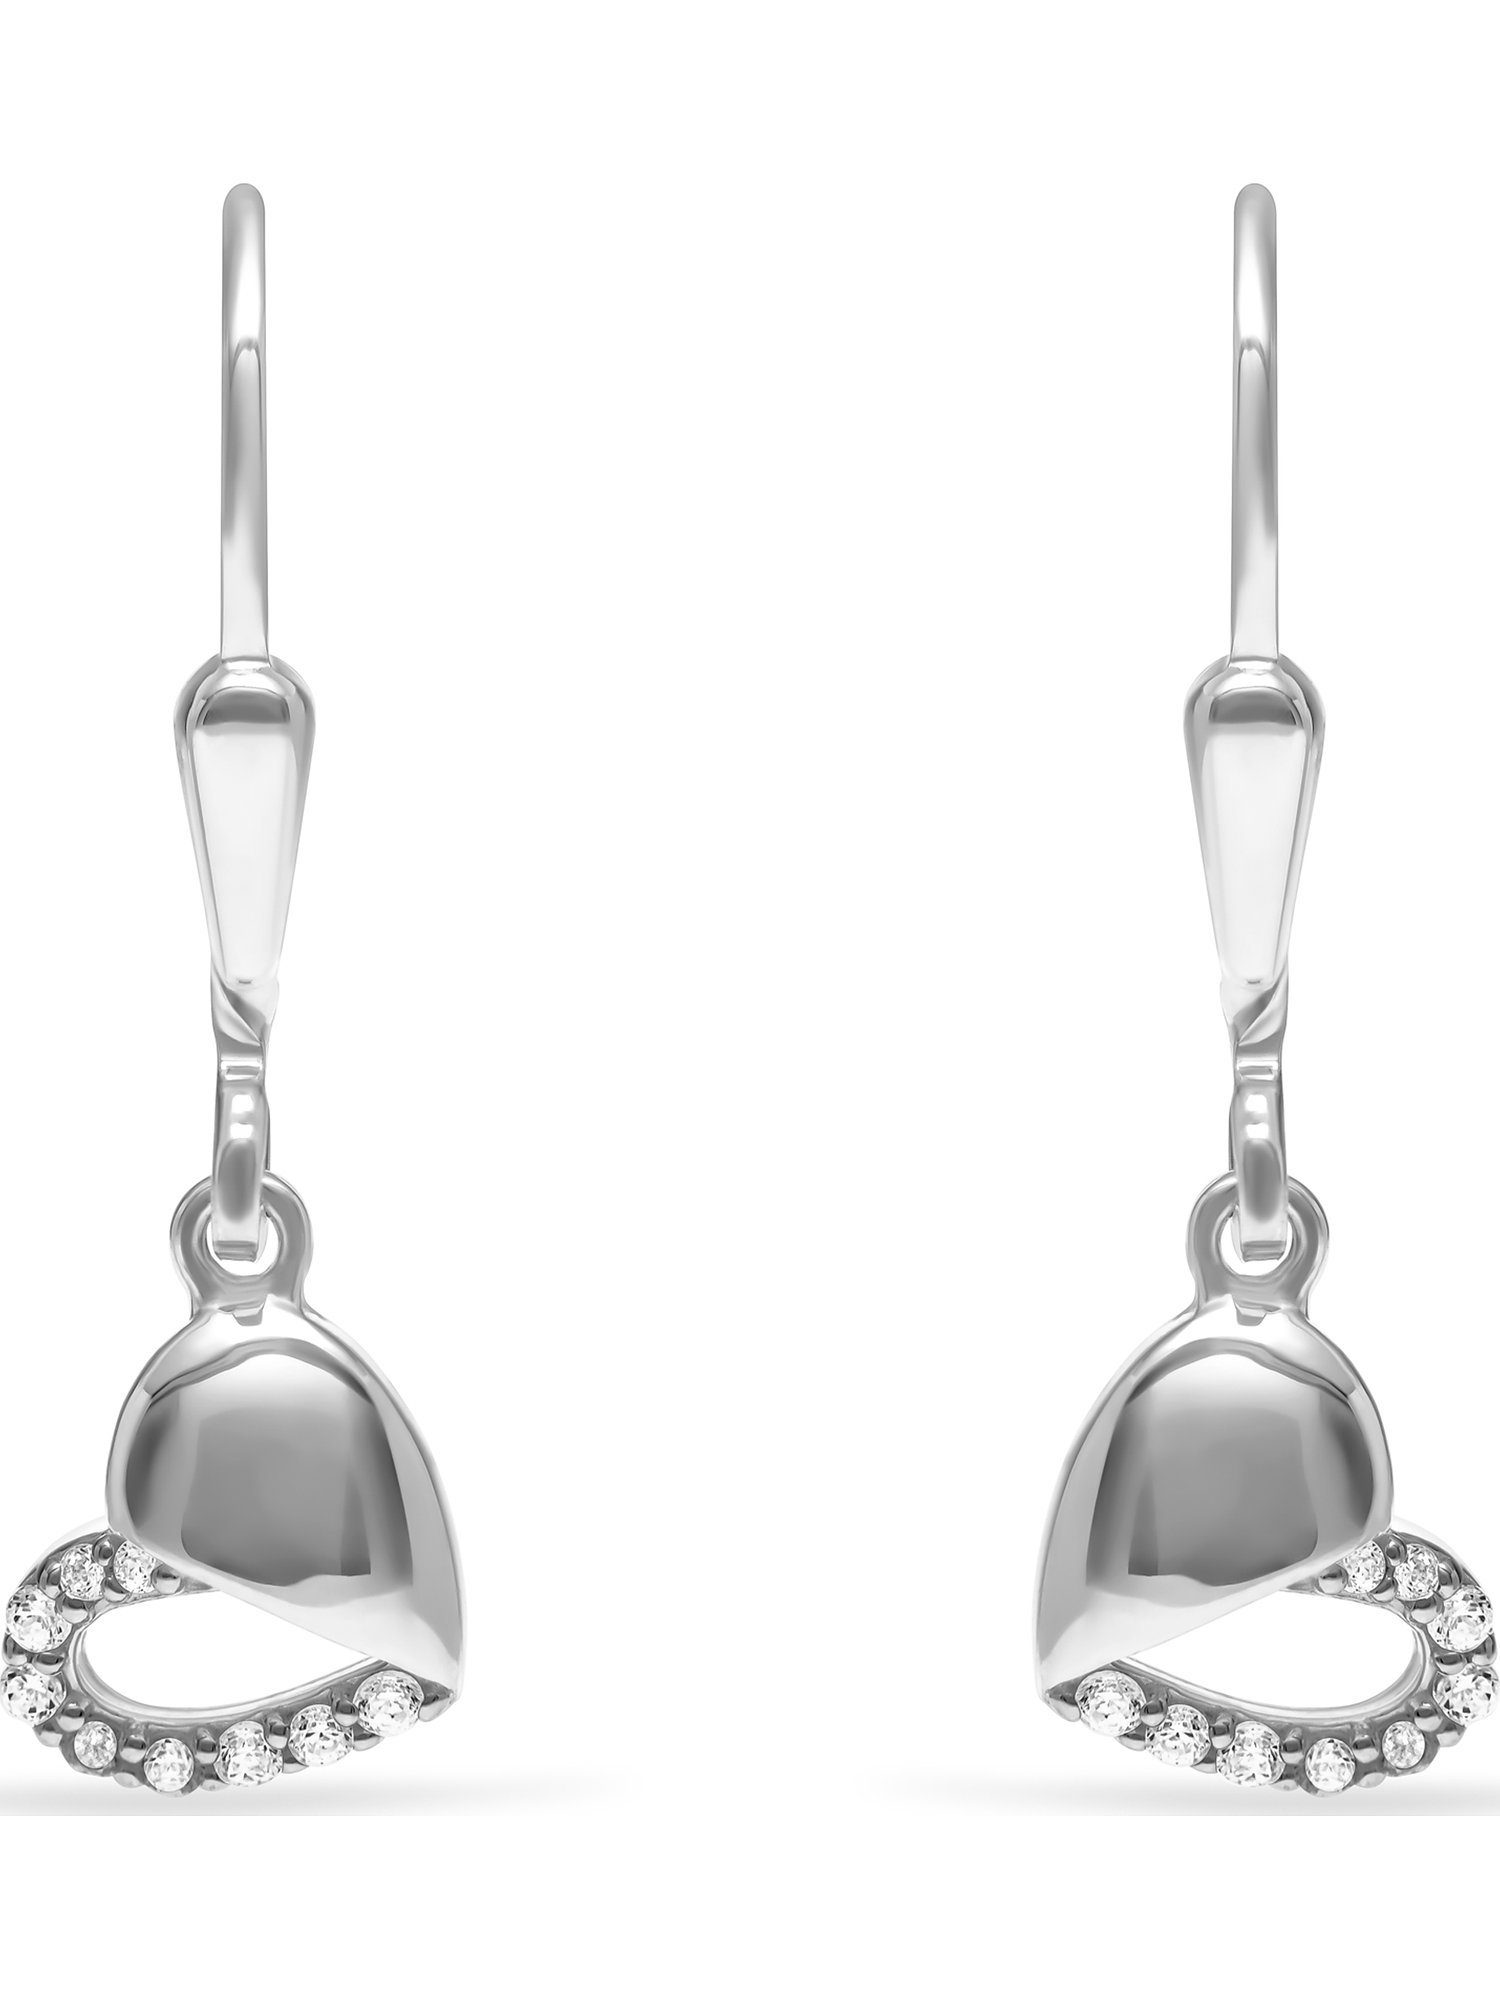 FAVS 18 Paar Silber Zirkonia Ohrhänger Mädchen-Ohrhänger FAVS 925er